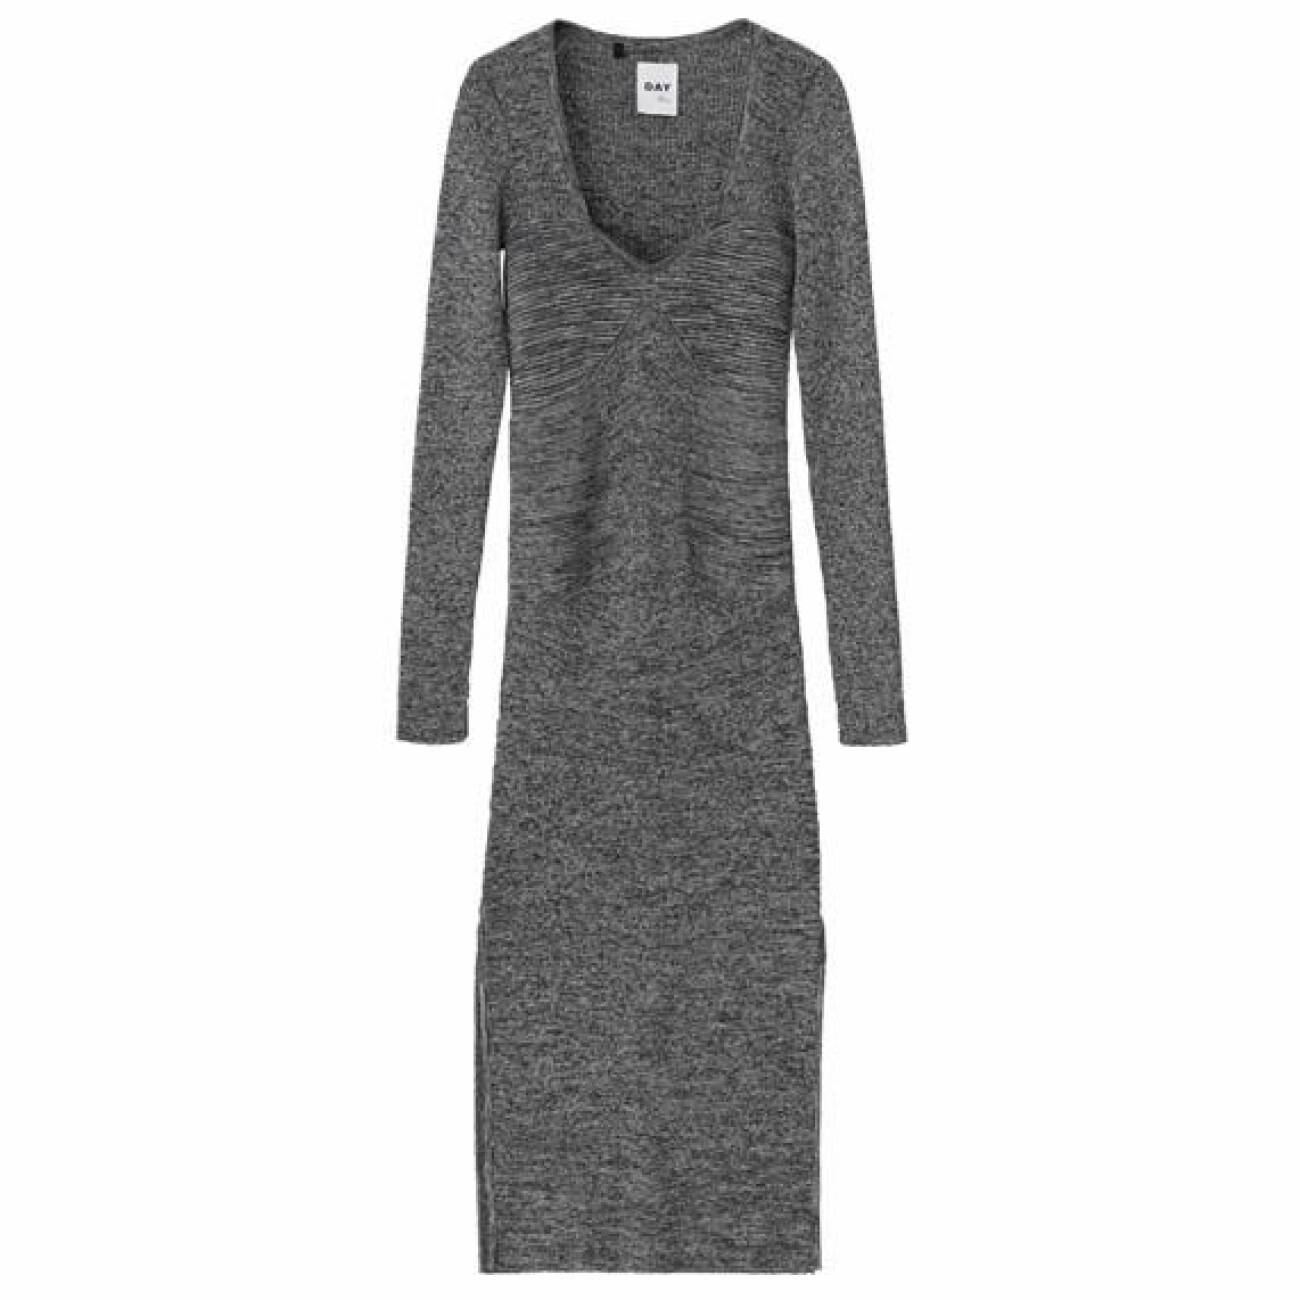 grå stickad klänning från Day Birger et Mikkelsen